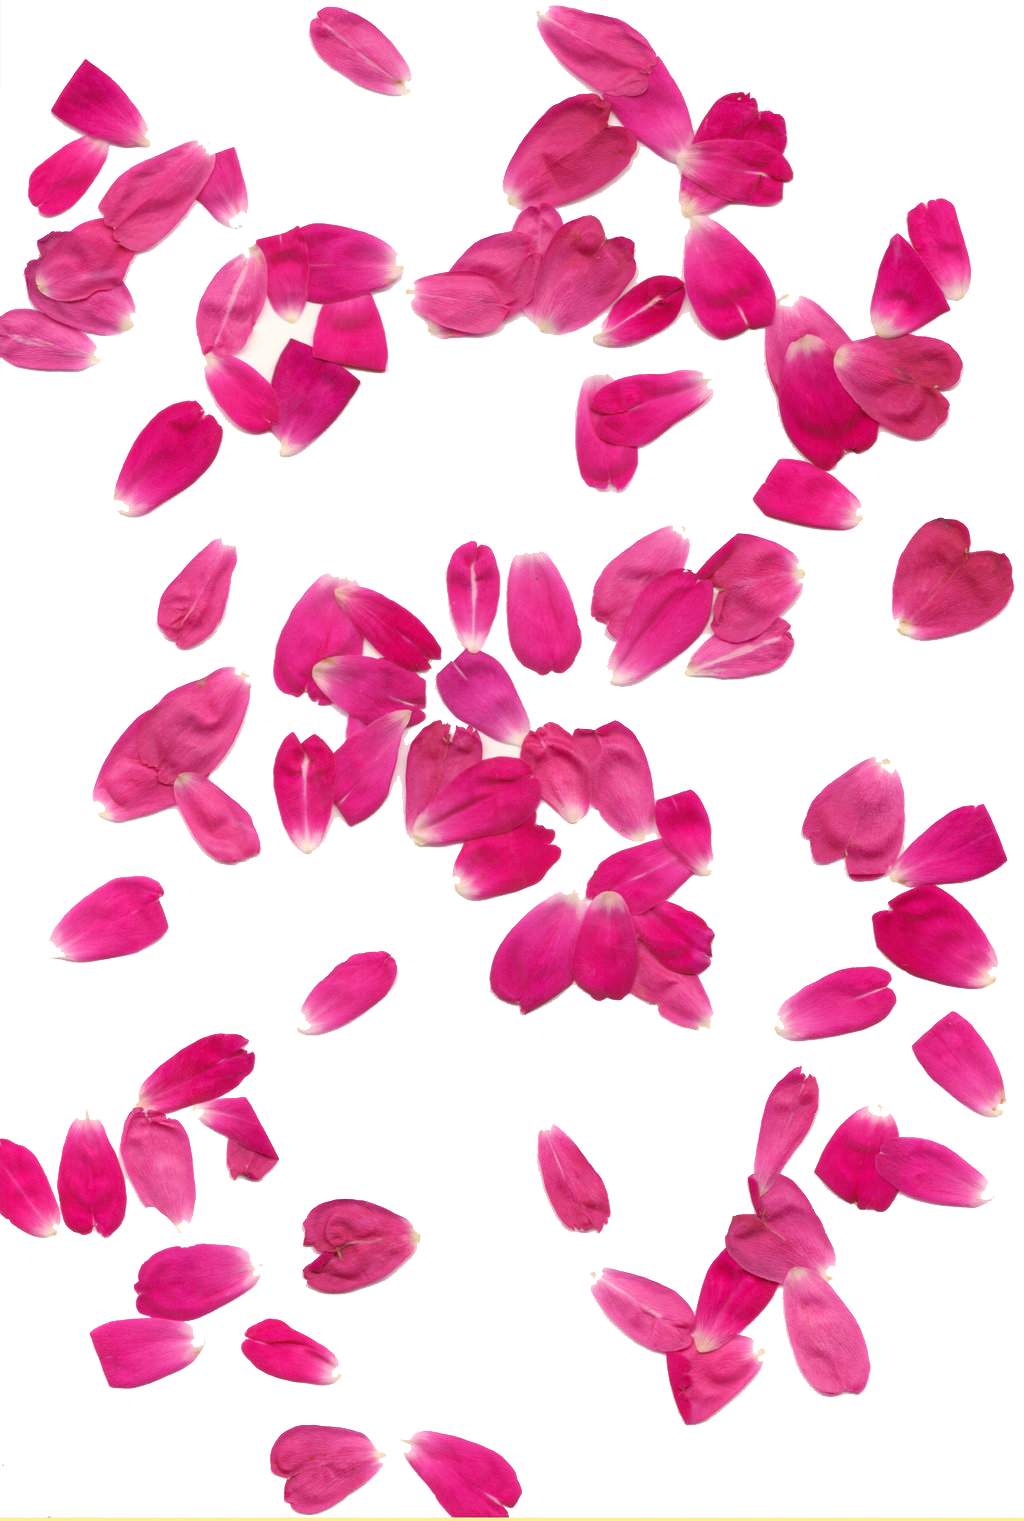 Rose Petals Transparent Background PNG Image